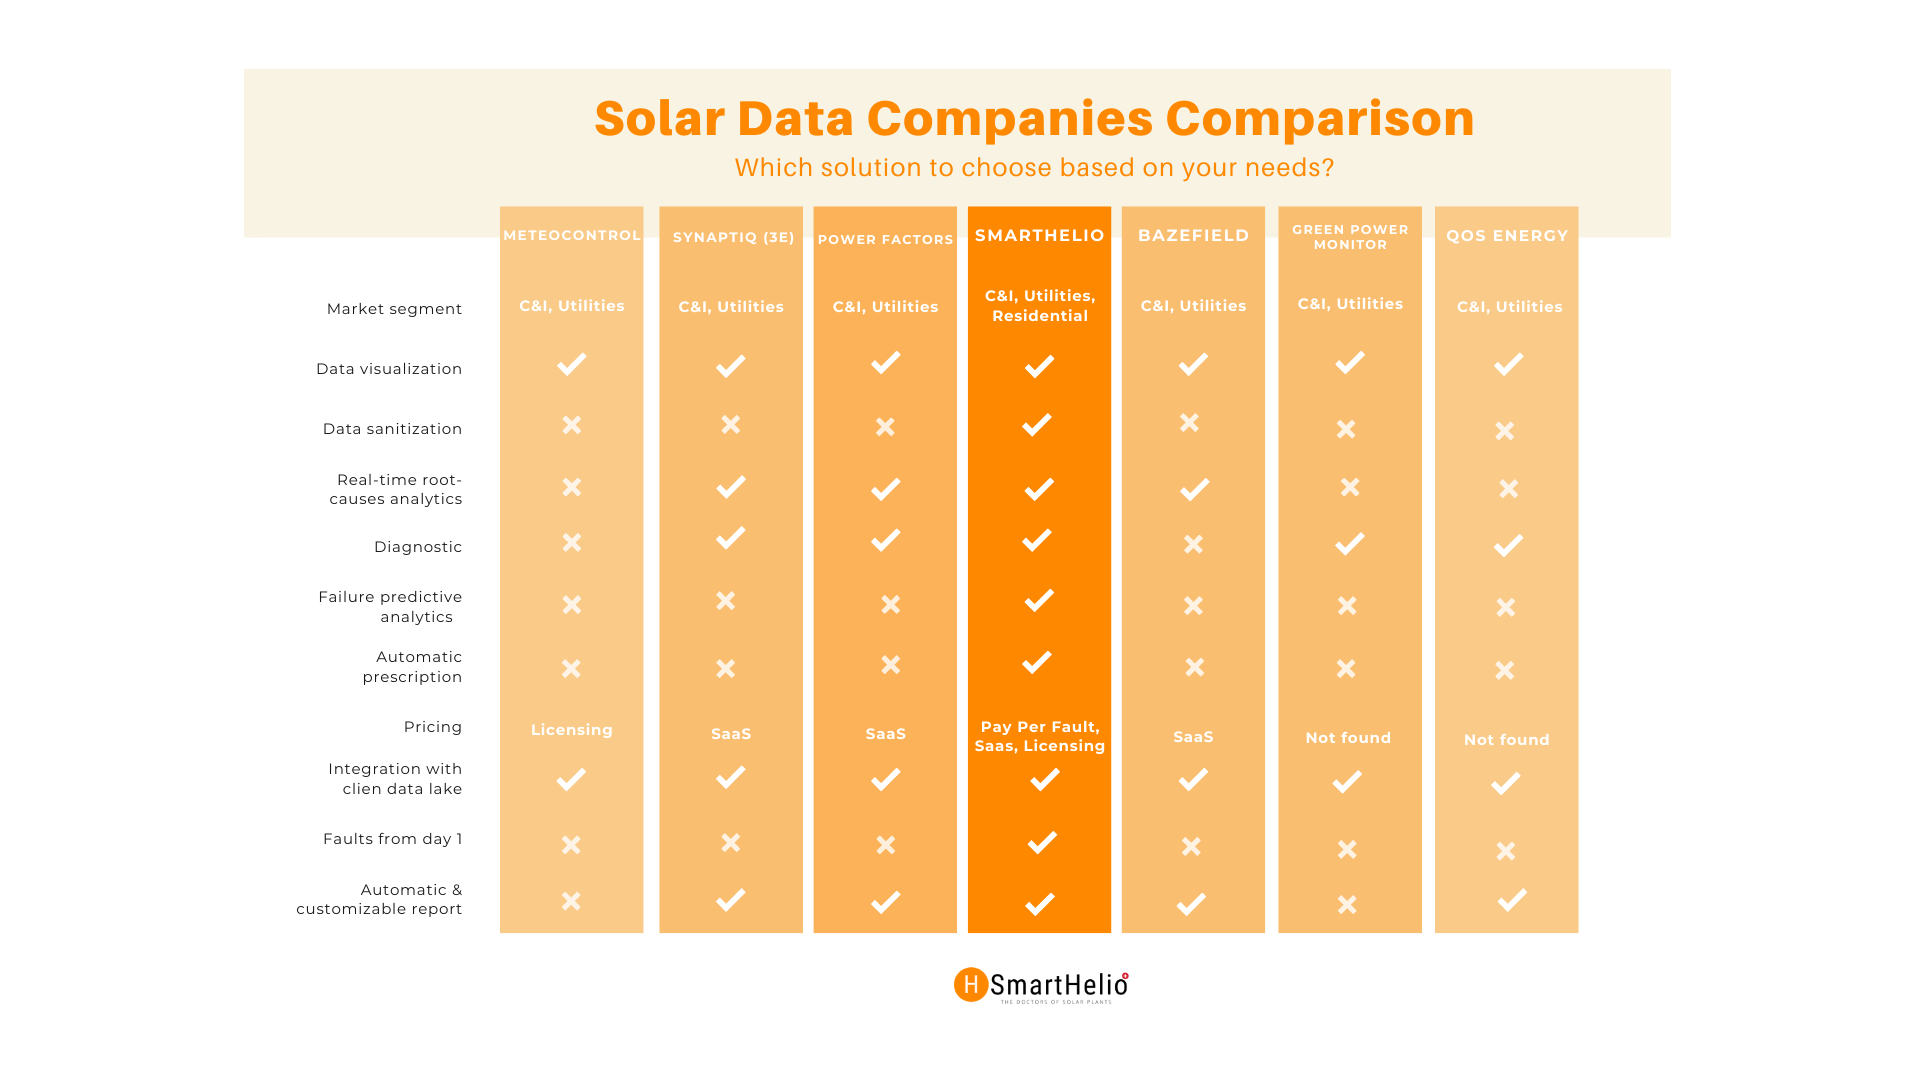 Comparison data companies in solar